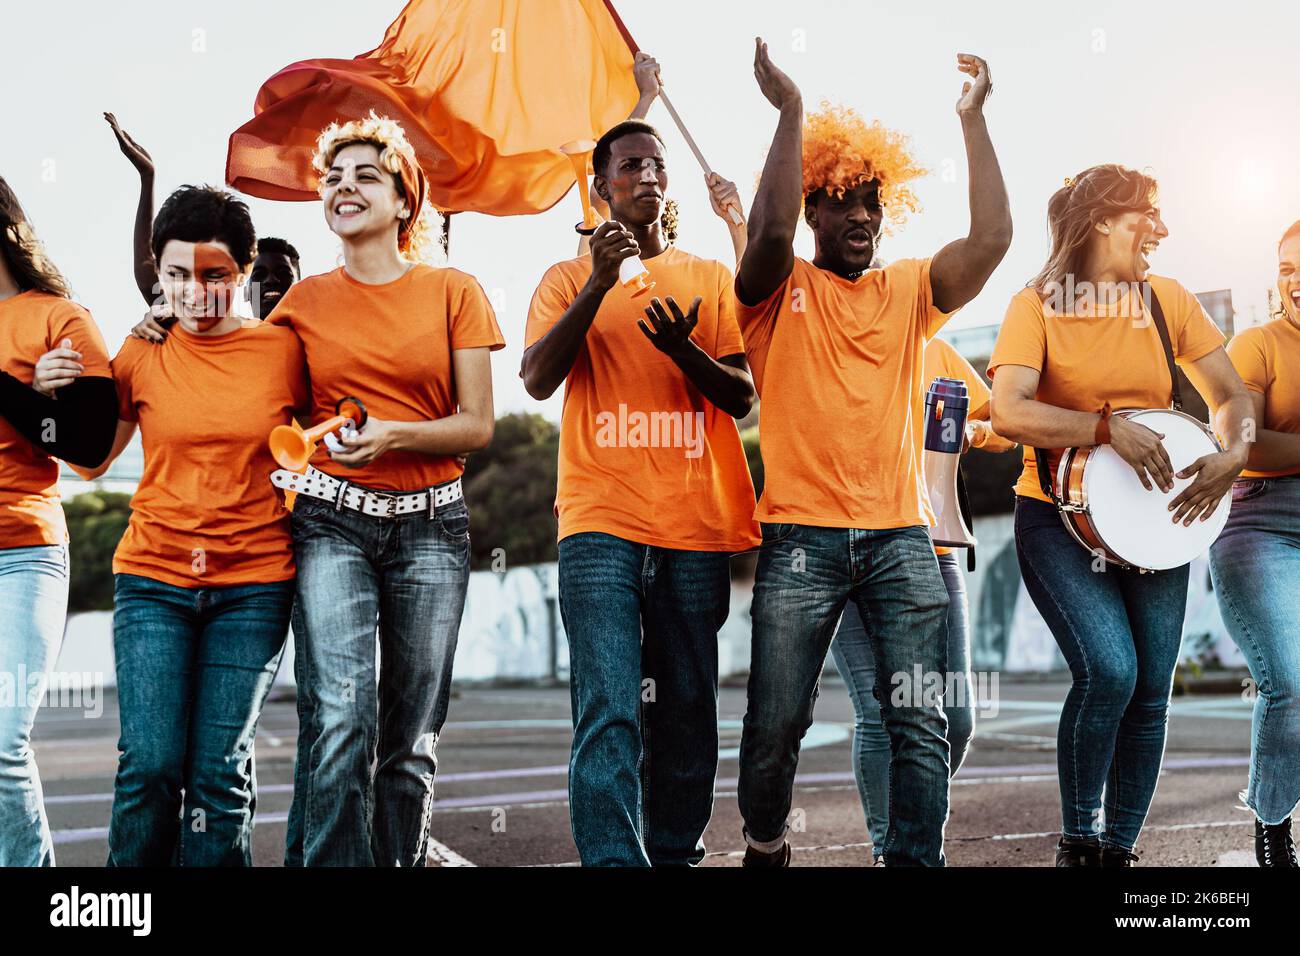 Eine Gruppe von Fußballfans, die zum Stadion laufen, um Fußballspiele zu sehen - Sport-Entertainment-Konzept Stockfoto